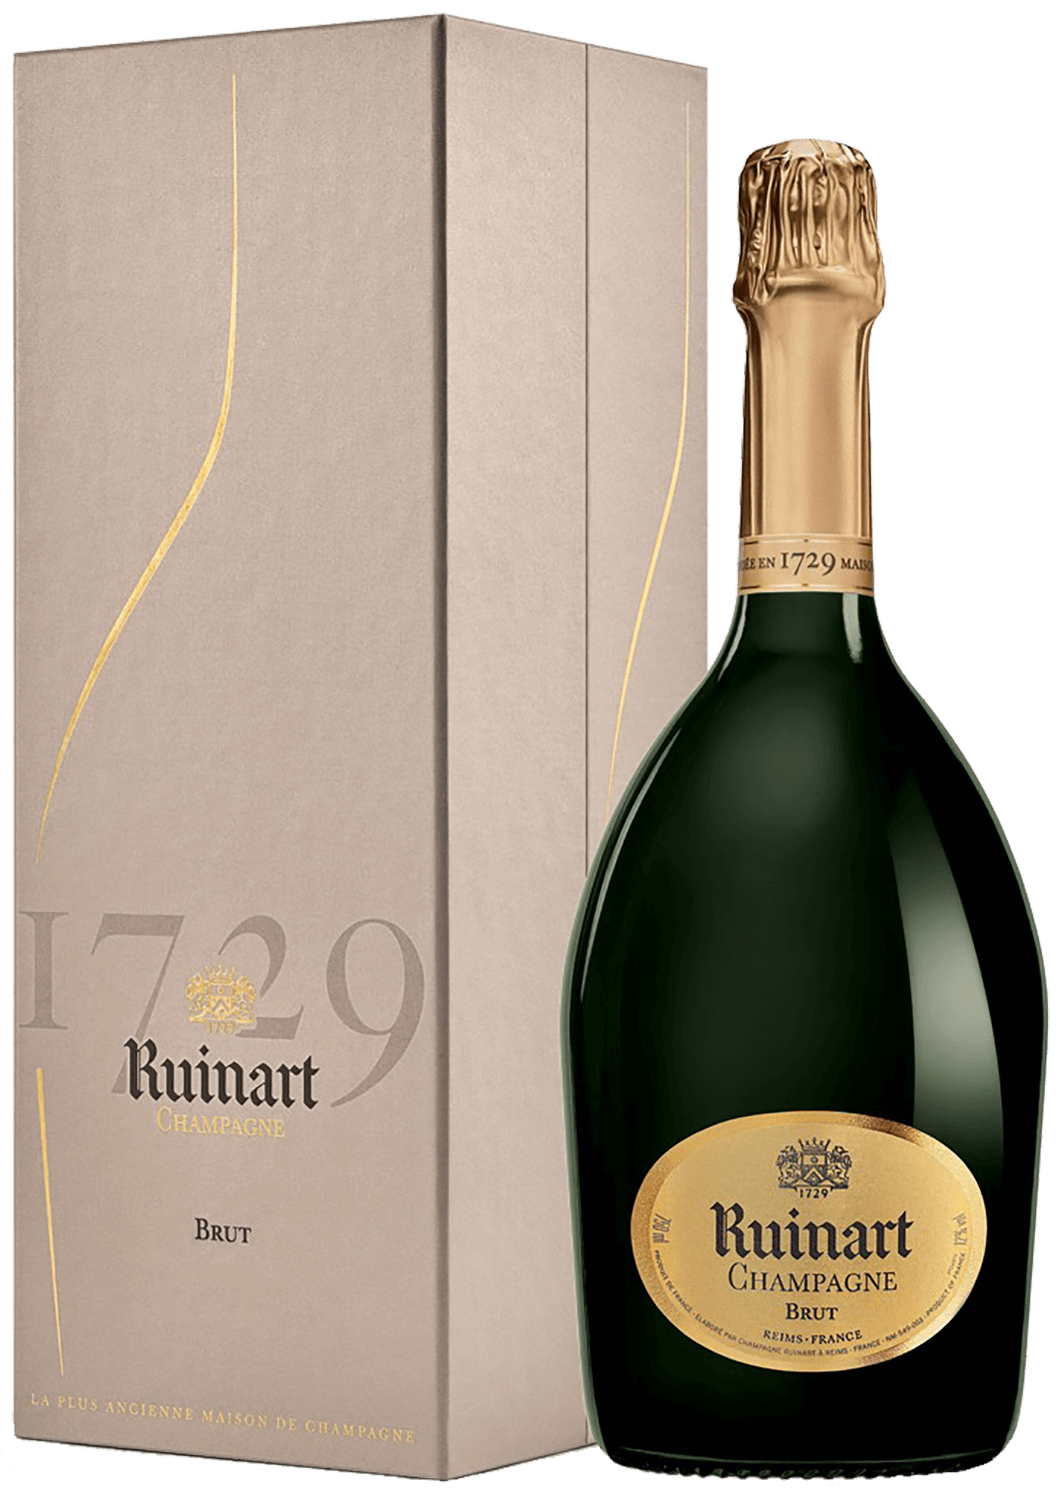 R de Ruinart Brut Champagne AOC (gift box) barfontarc tradition brut champagne аoc coopérative vinicole de la région de baroville gift box